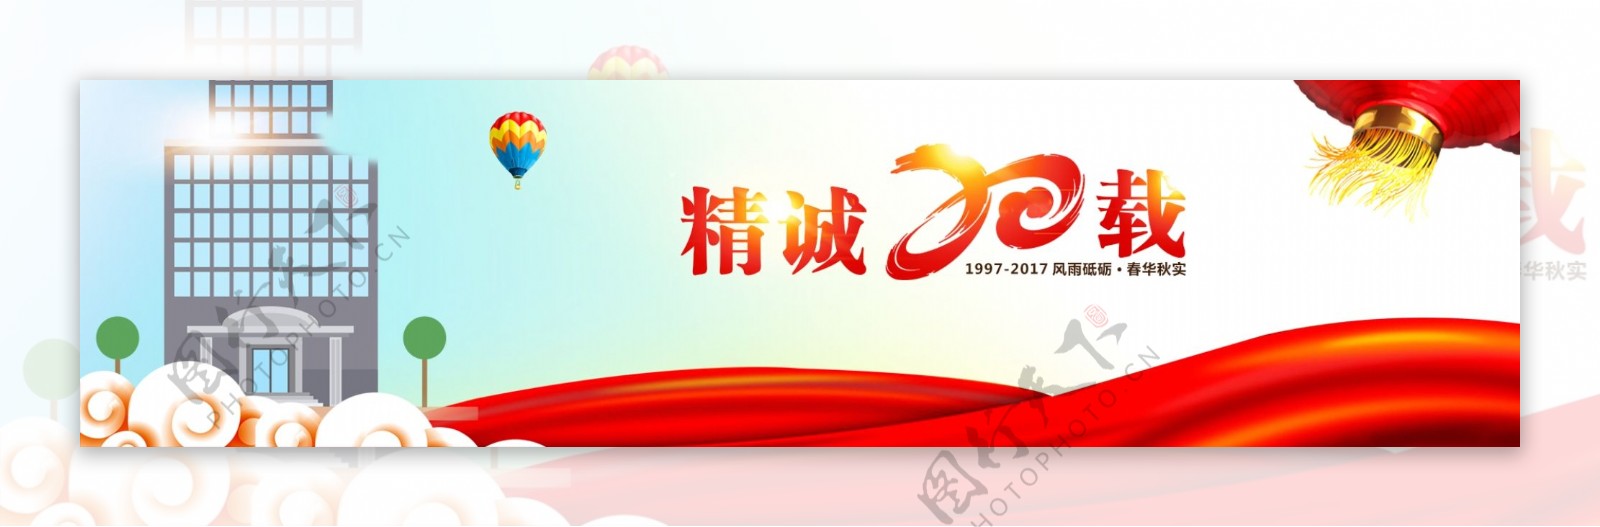 20周年网页宣传banner